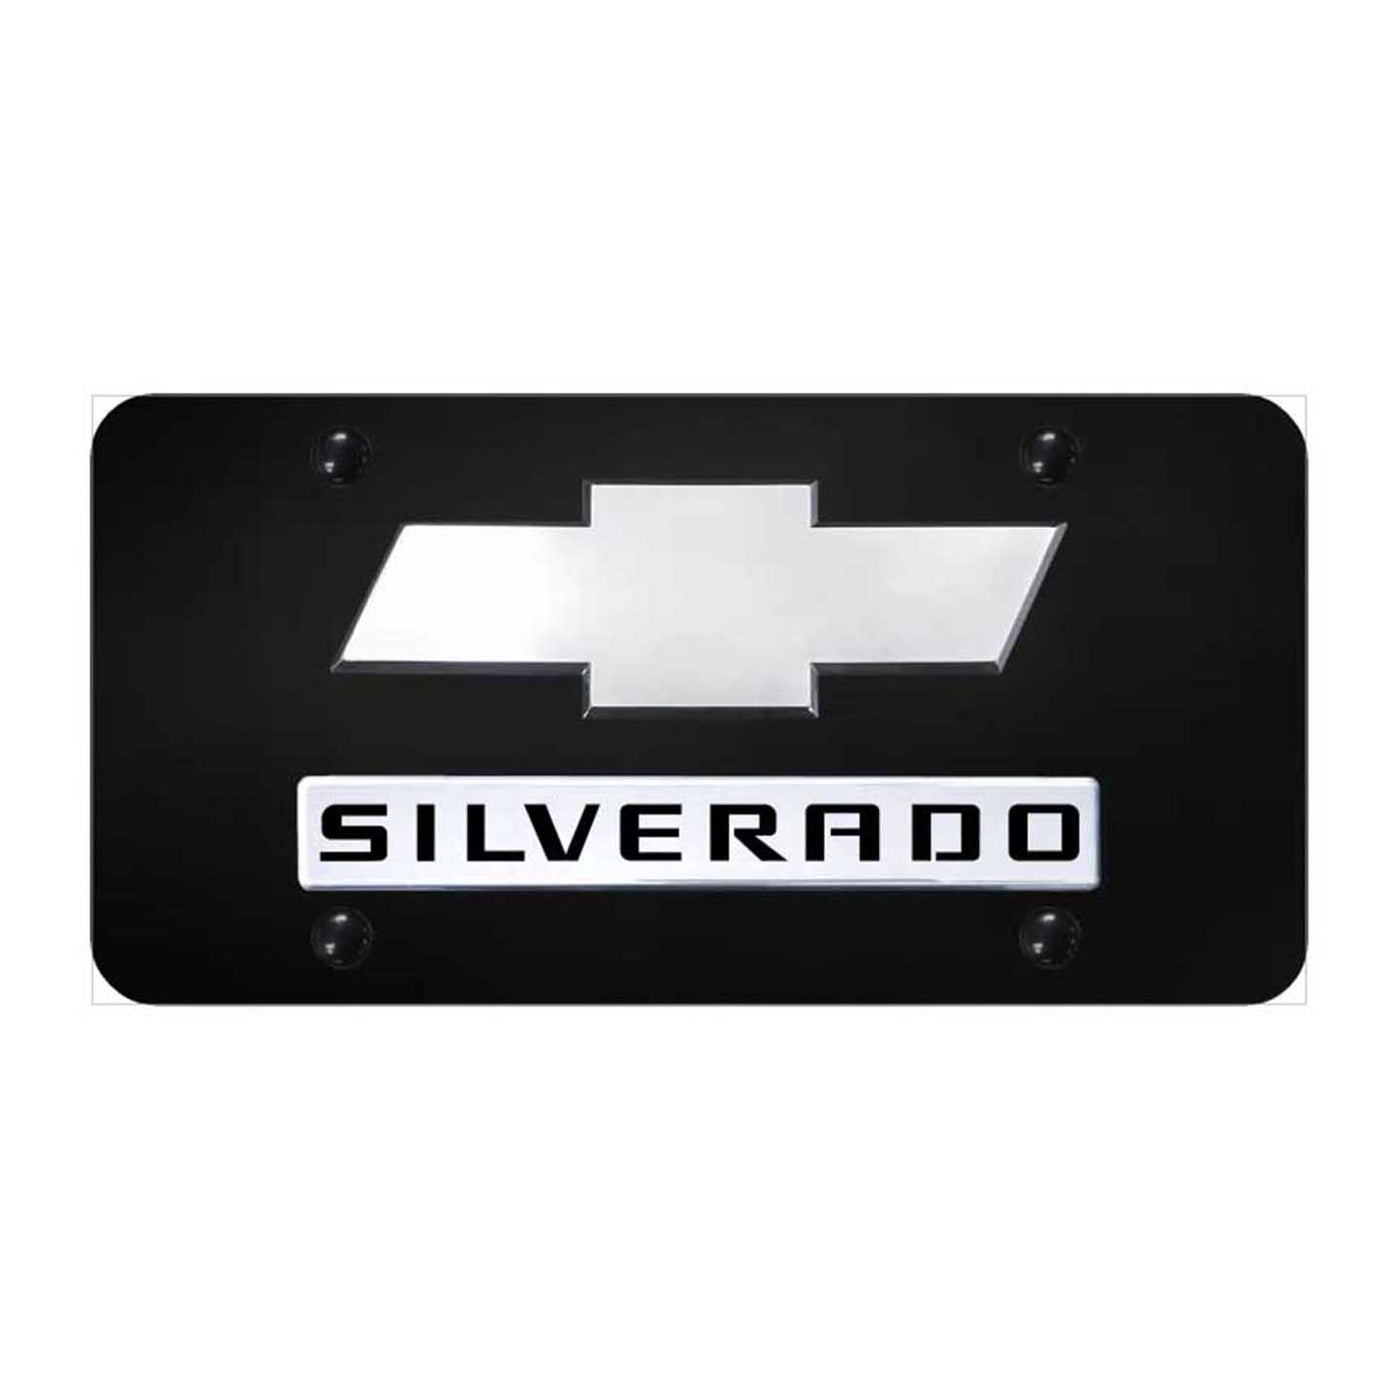 Dual Silverado (New) License Plate - Chrome on Black